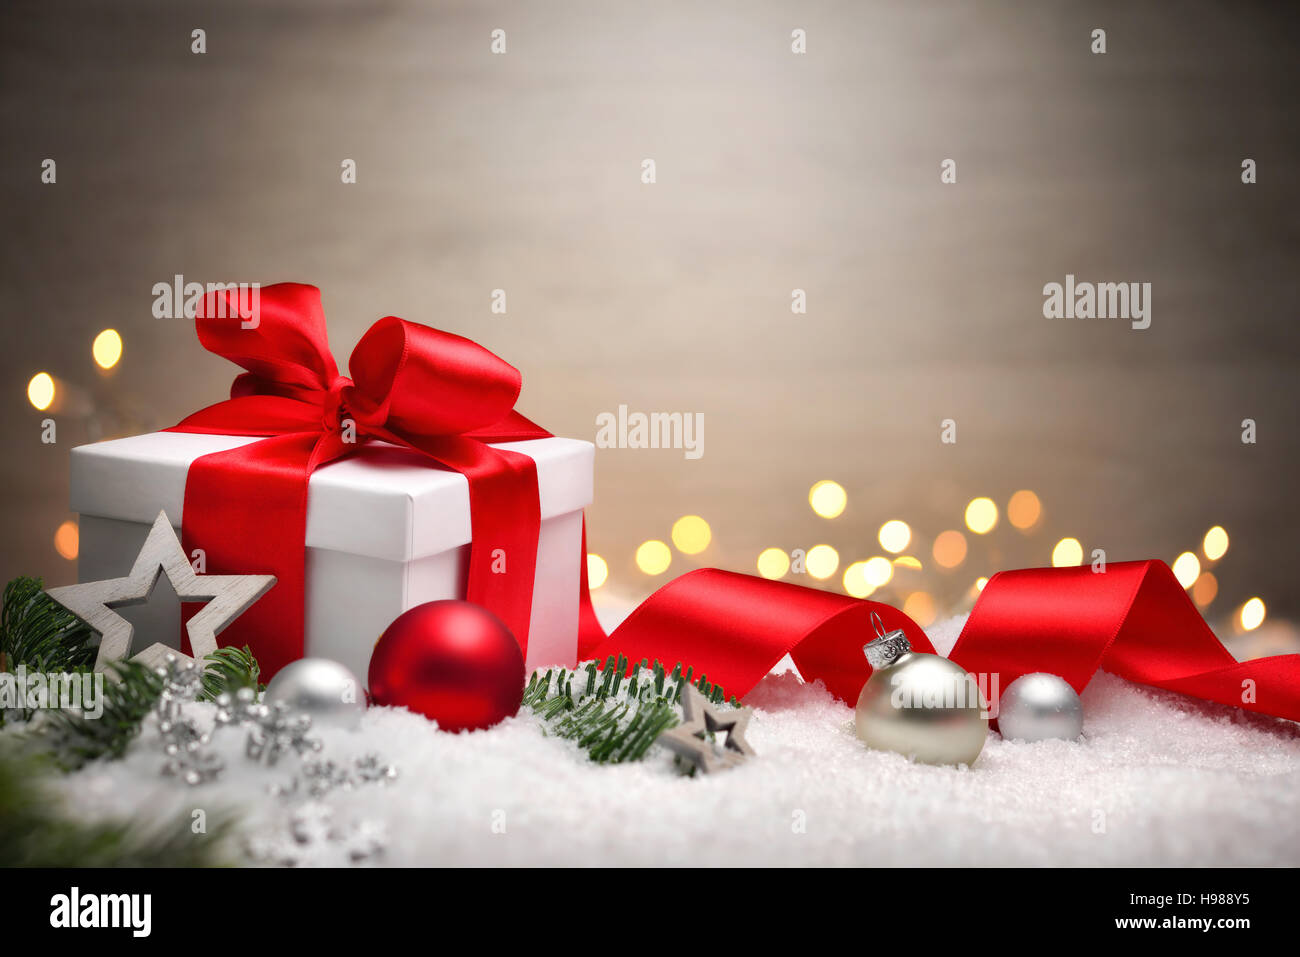 Scène de Noël avec une boîte cadeau blanche, arc rouge et ruban, lumières, Noël, branches et neige, with copy space Banque D'Images